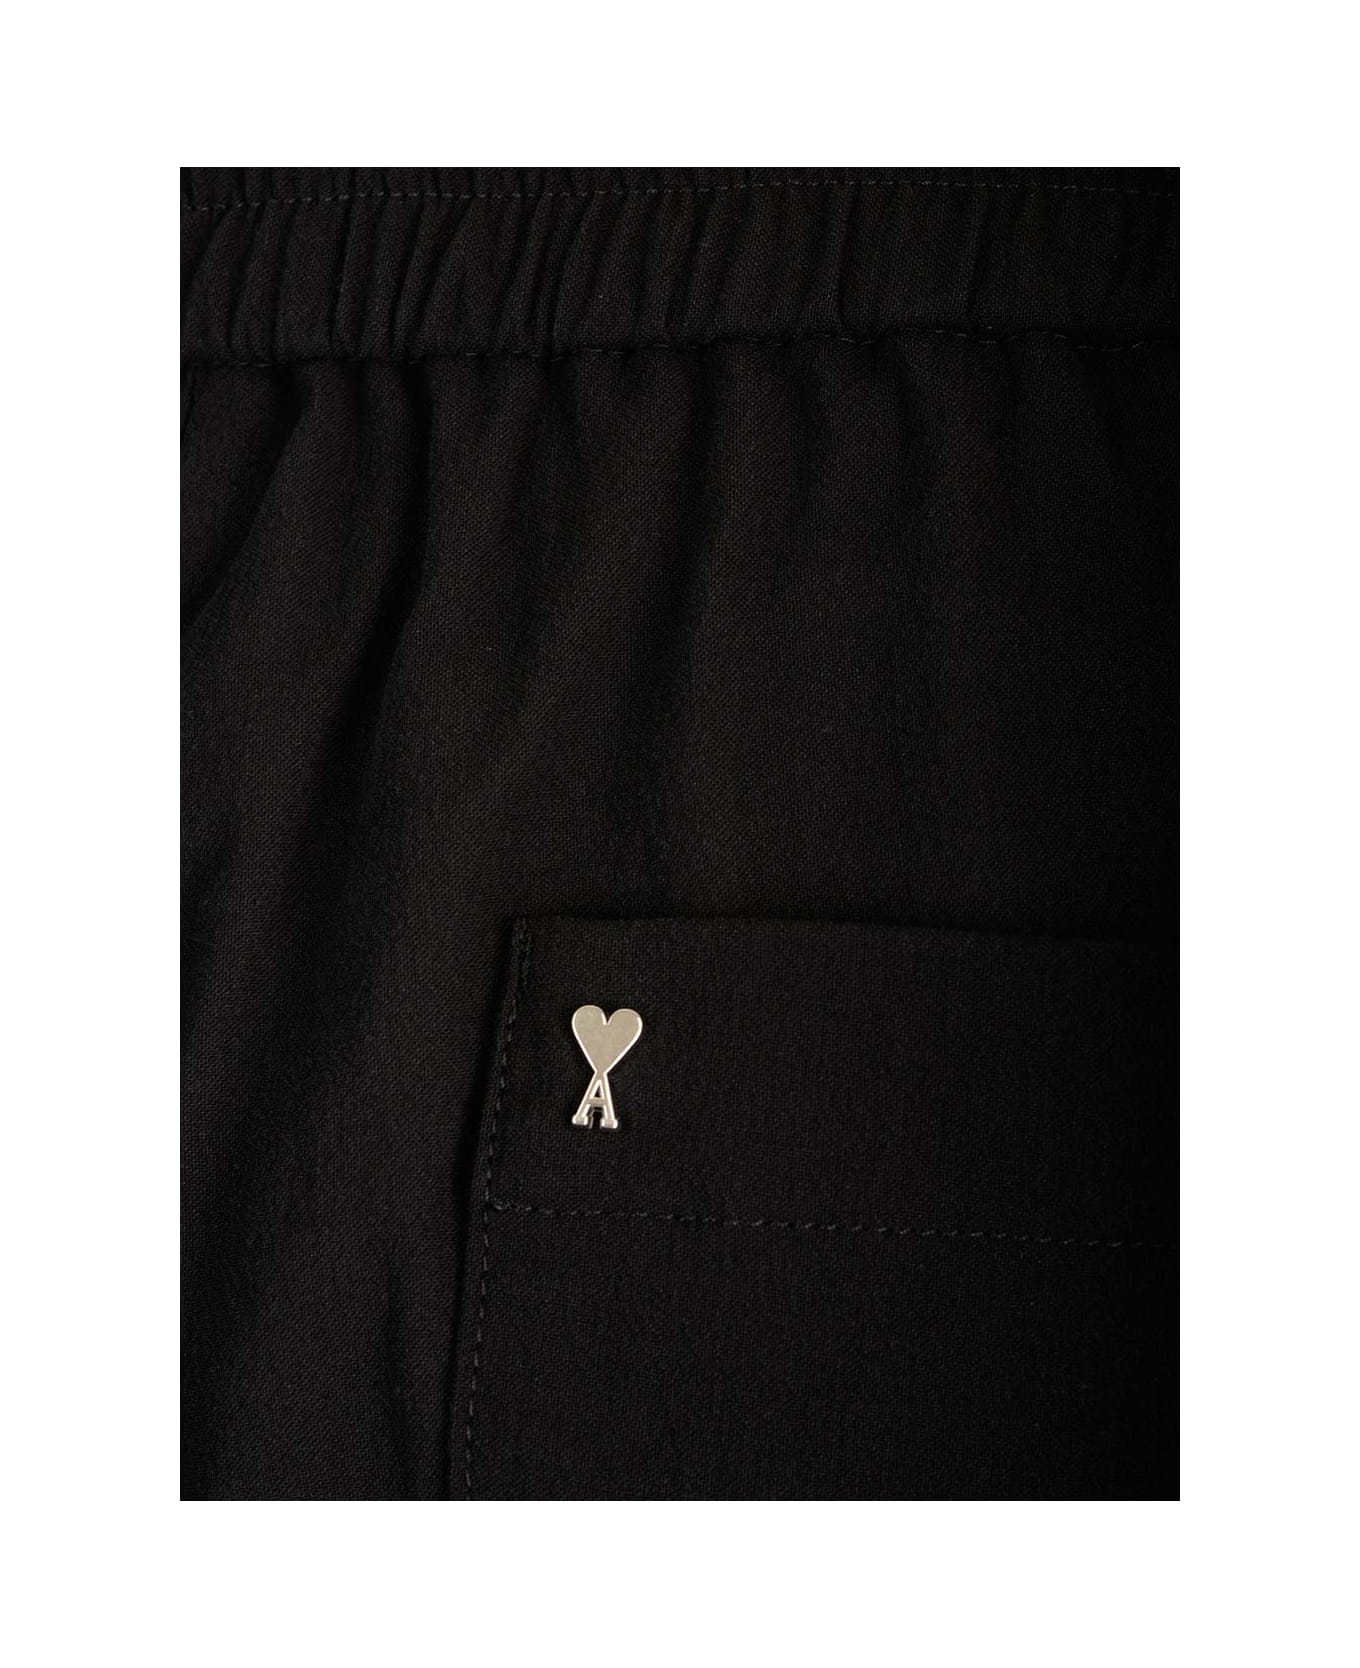 Ami Alexandre Mattiussi Cotton Crepe Trousers - BLACK ボトムス